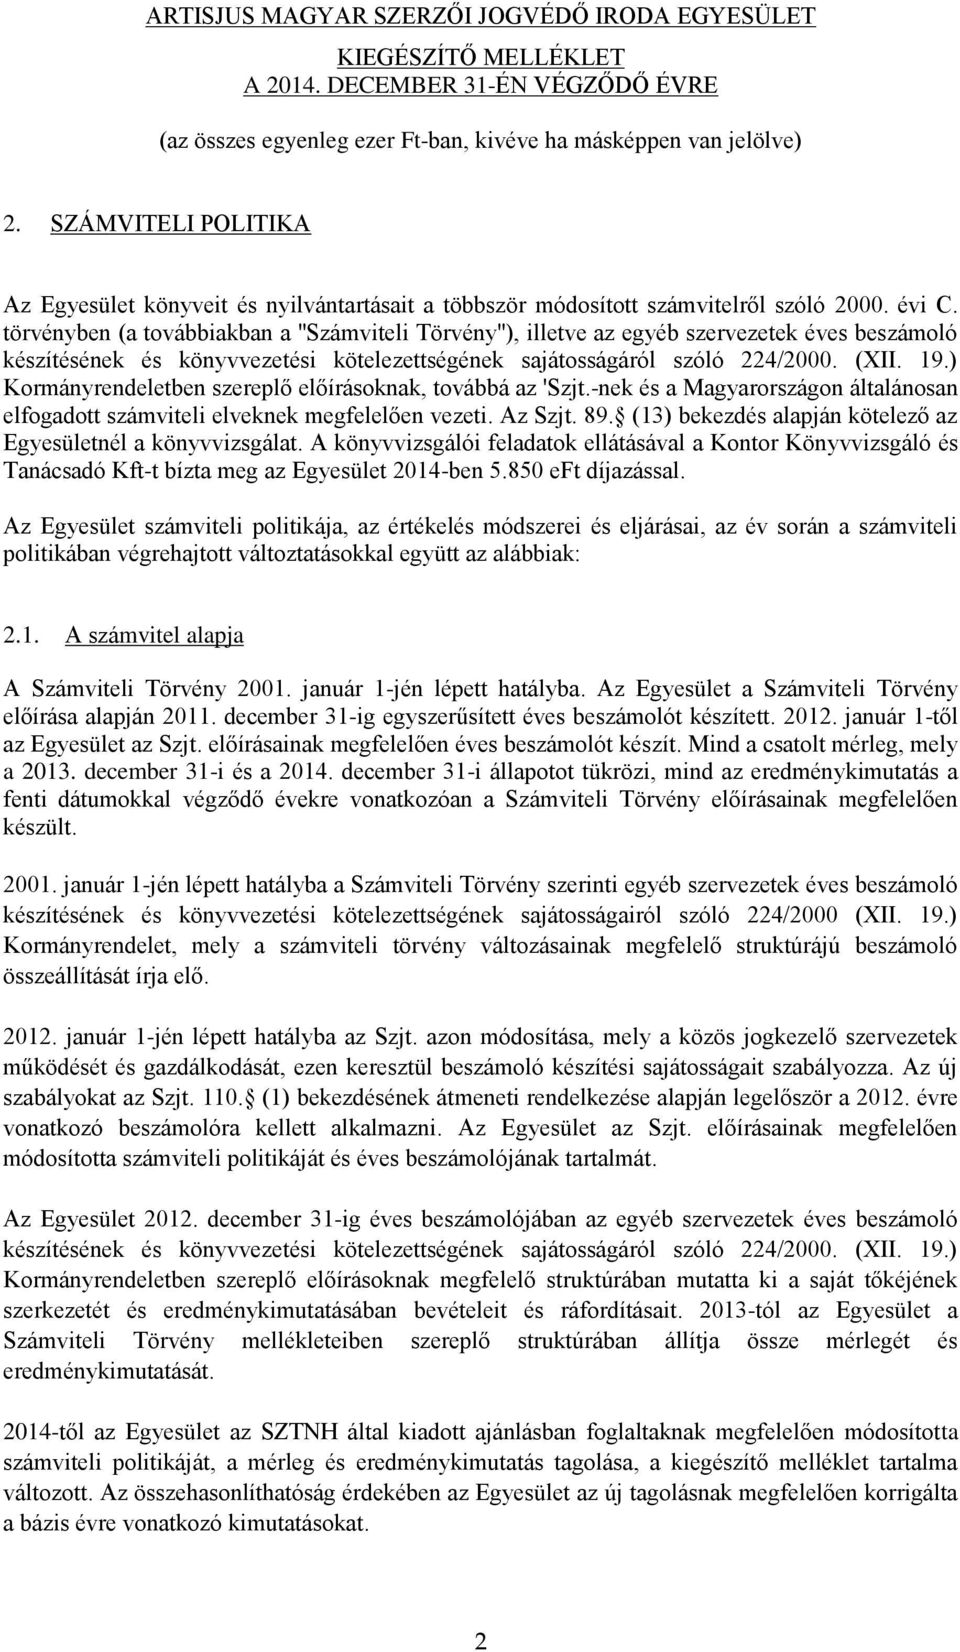 ) Kormányrendeletben szereplő előírásoknak, továbbá az 'Szjt.-nek és a Magyarországon általánosan elfogadott számviteli elveknek megfelelően vezeti. Az Szjt. 89.